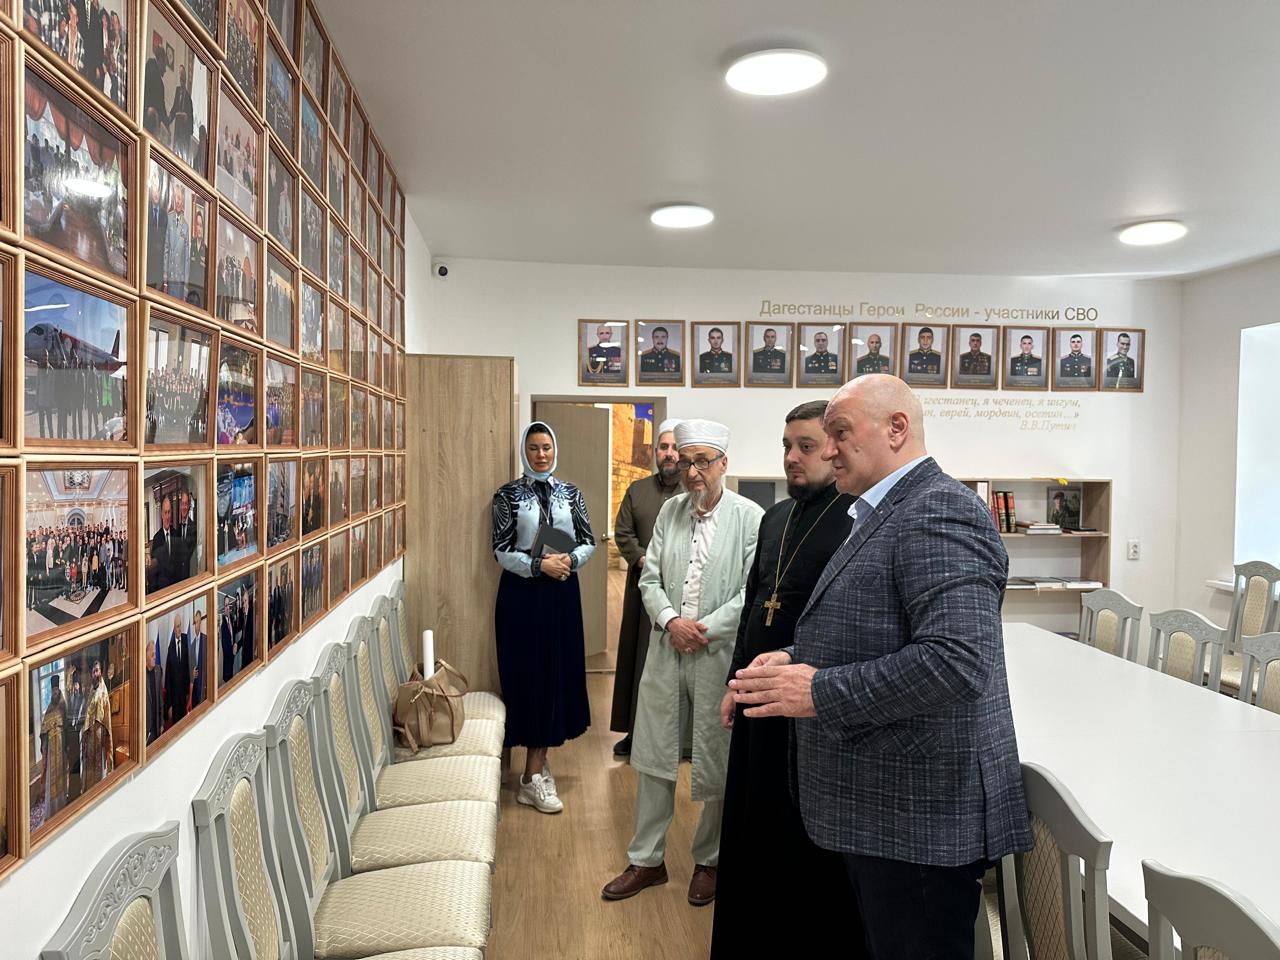 Дагестанский центр провел в Екатеринбурге урок межрелигиозного диалога